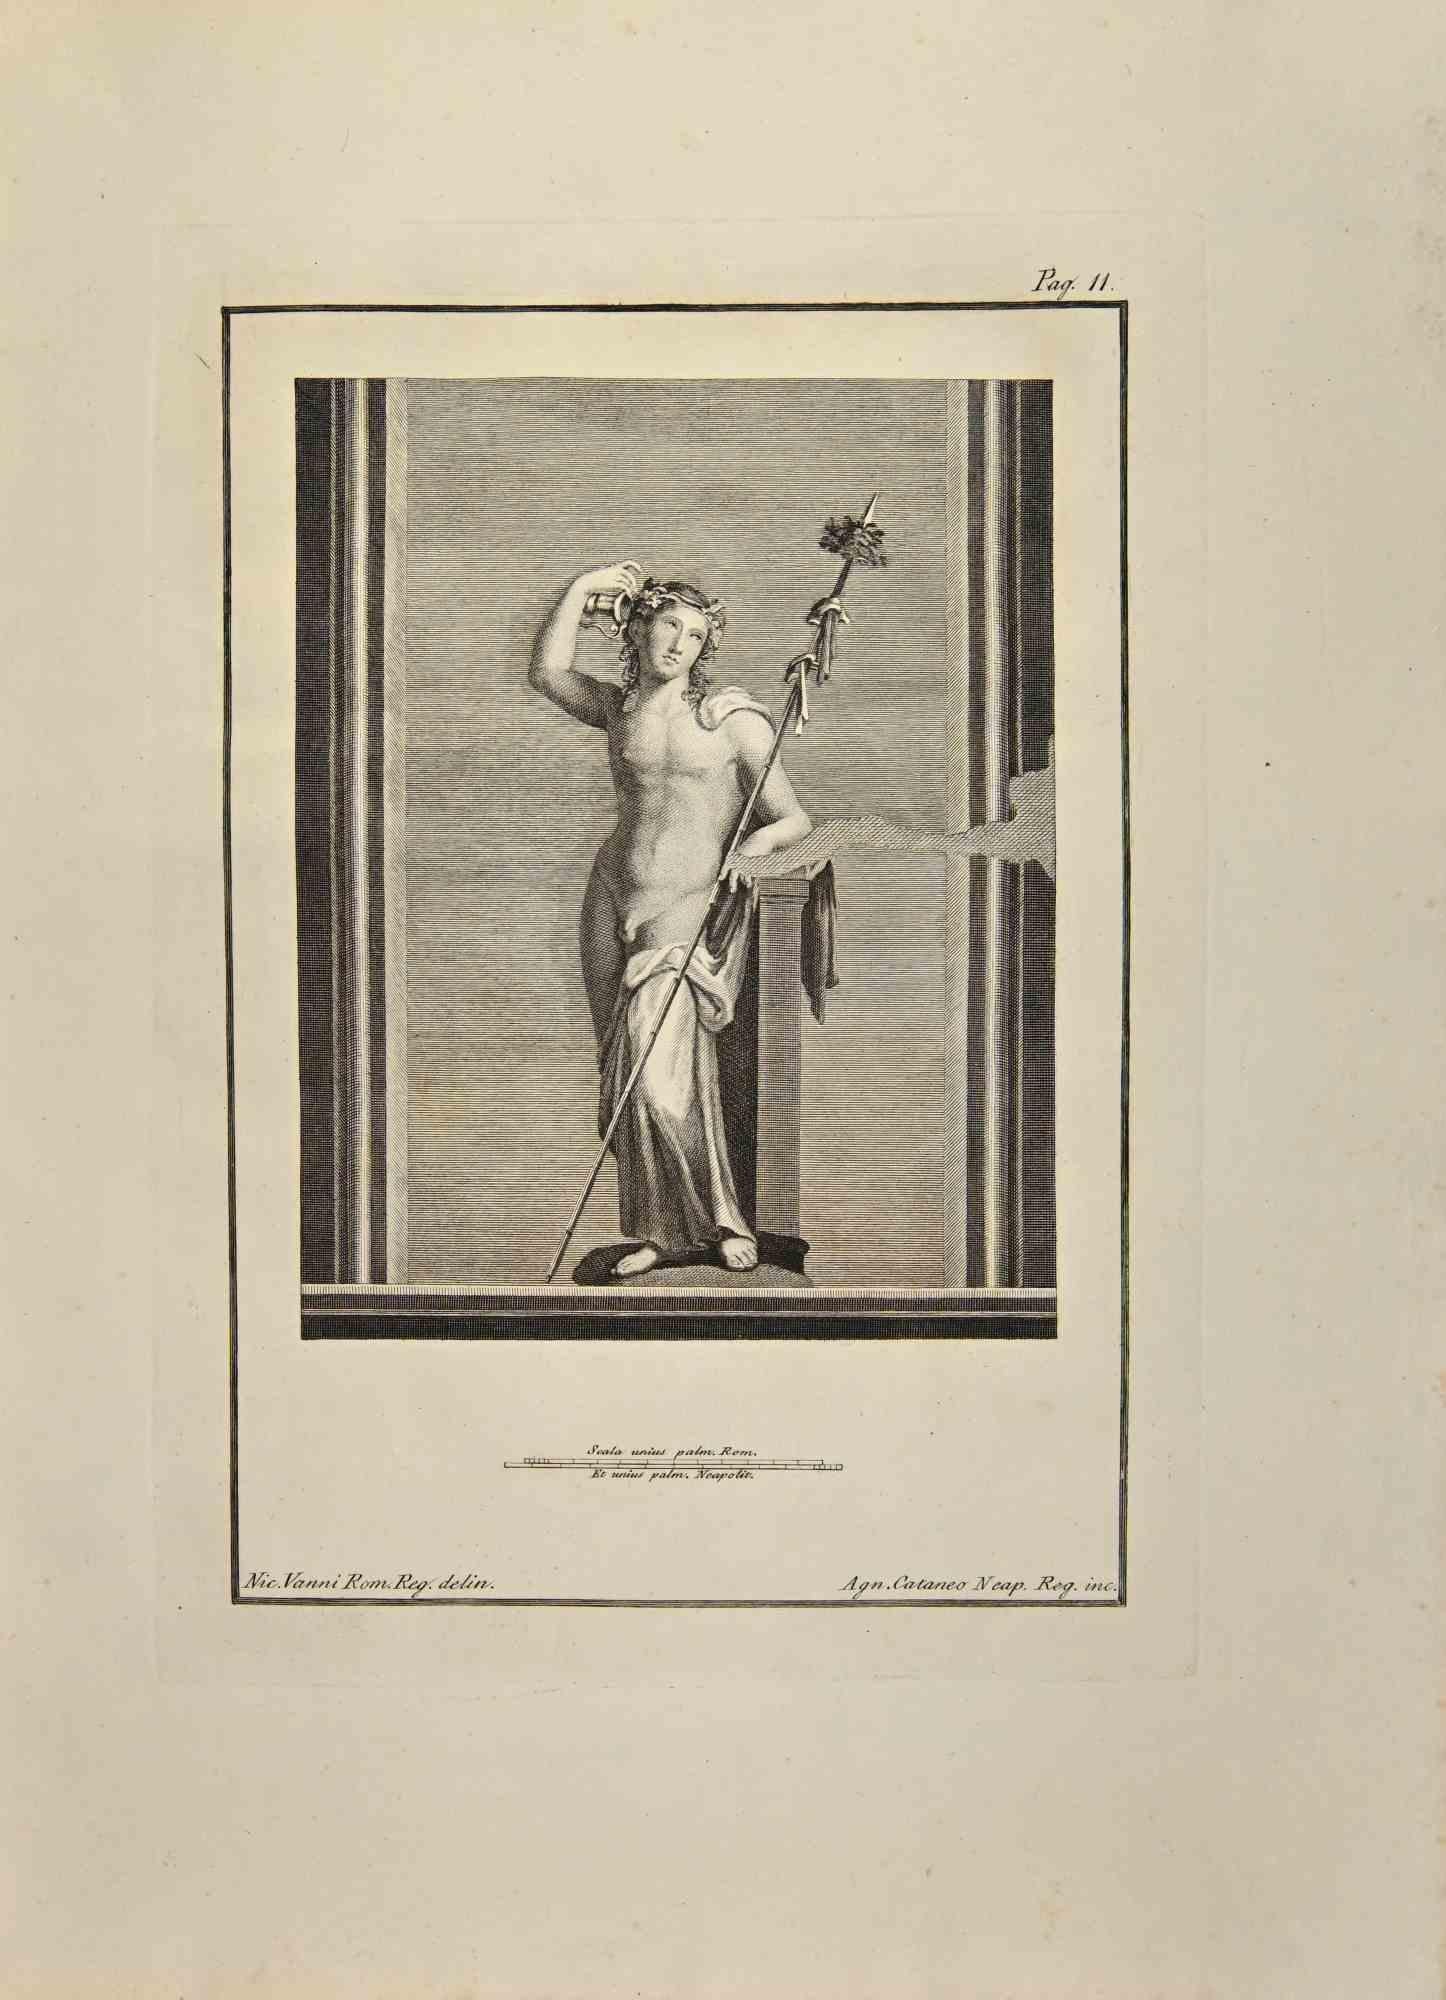 Dionysos Bacchus aus den "Antiken von Herculaneum" ist eine Radierung auf Papier von Aniello Cataneo aus dem 18. Jahrhundert.

Signiert auf der Platte.

Guter Zustand mit einigen Faltungen.

Die Radierung gehört zu der Druckserie "Antiquities of